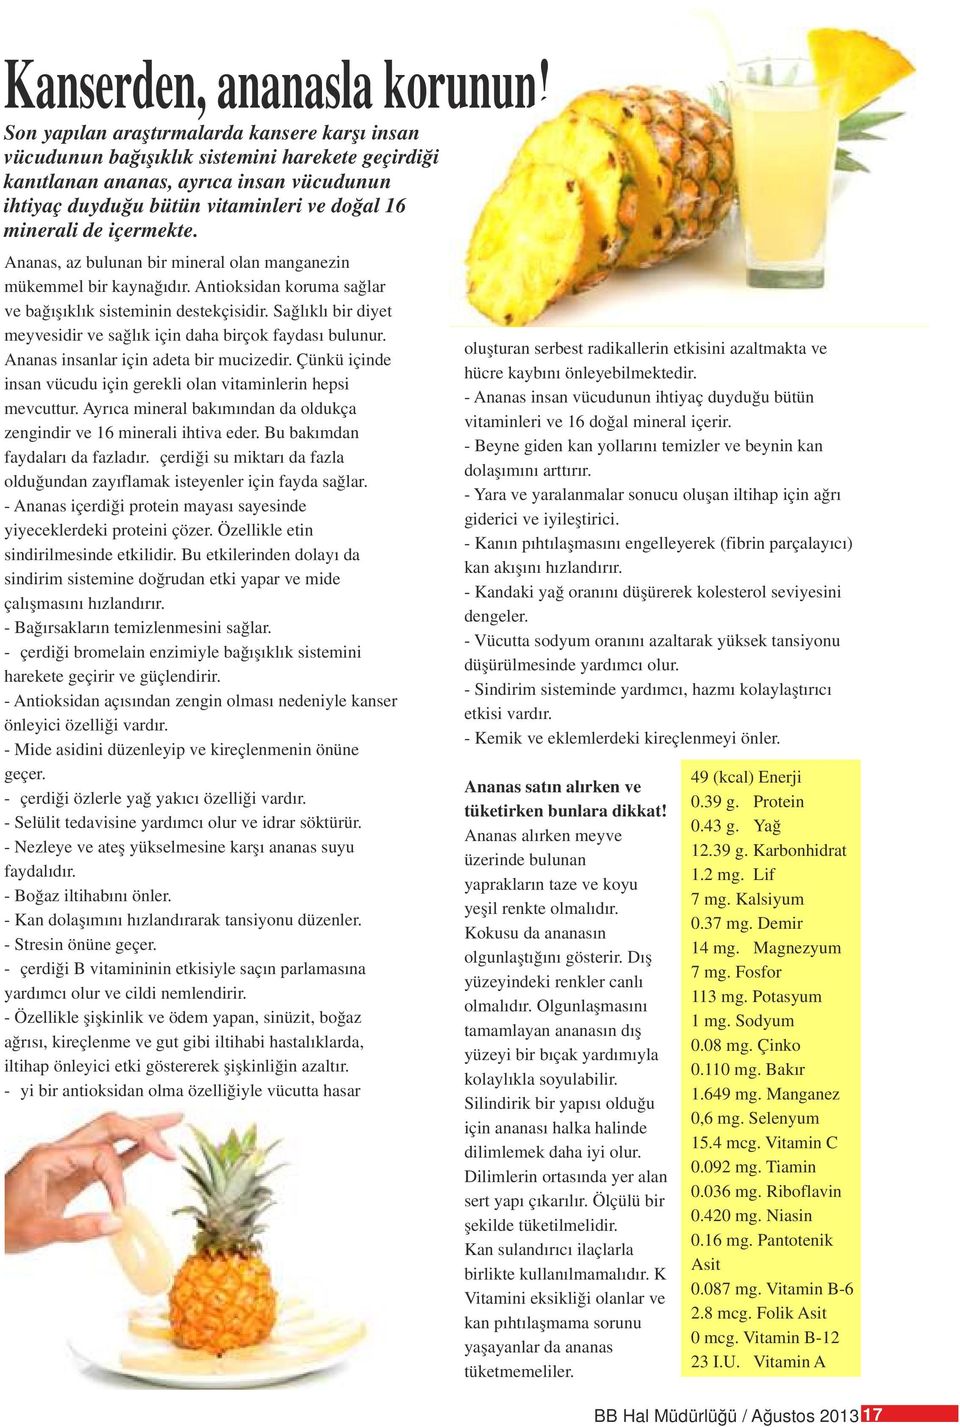 içermekte. Ananas, az bulunan bir mineral olan manganezin mükemmel bir kaynağıdır. Antioksidan koruma sağlar ve bağışıklık sisteminin destekçisidir.